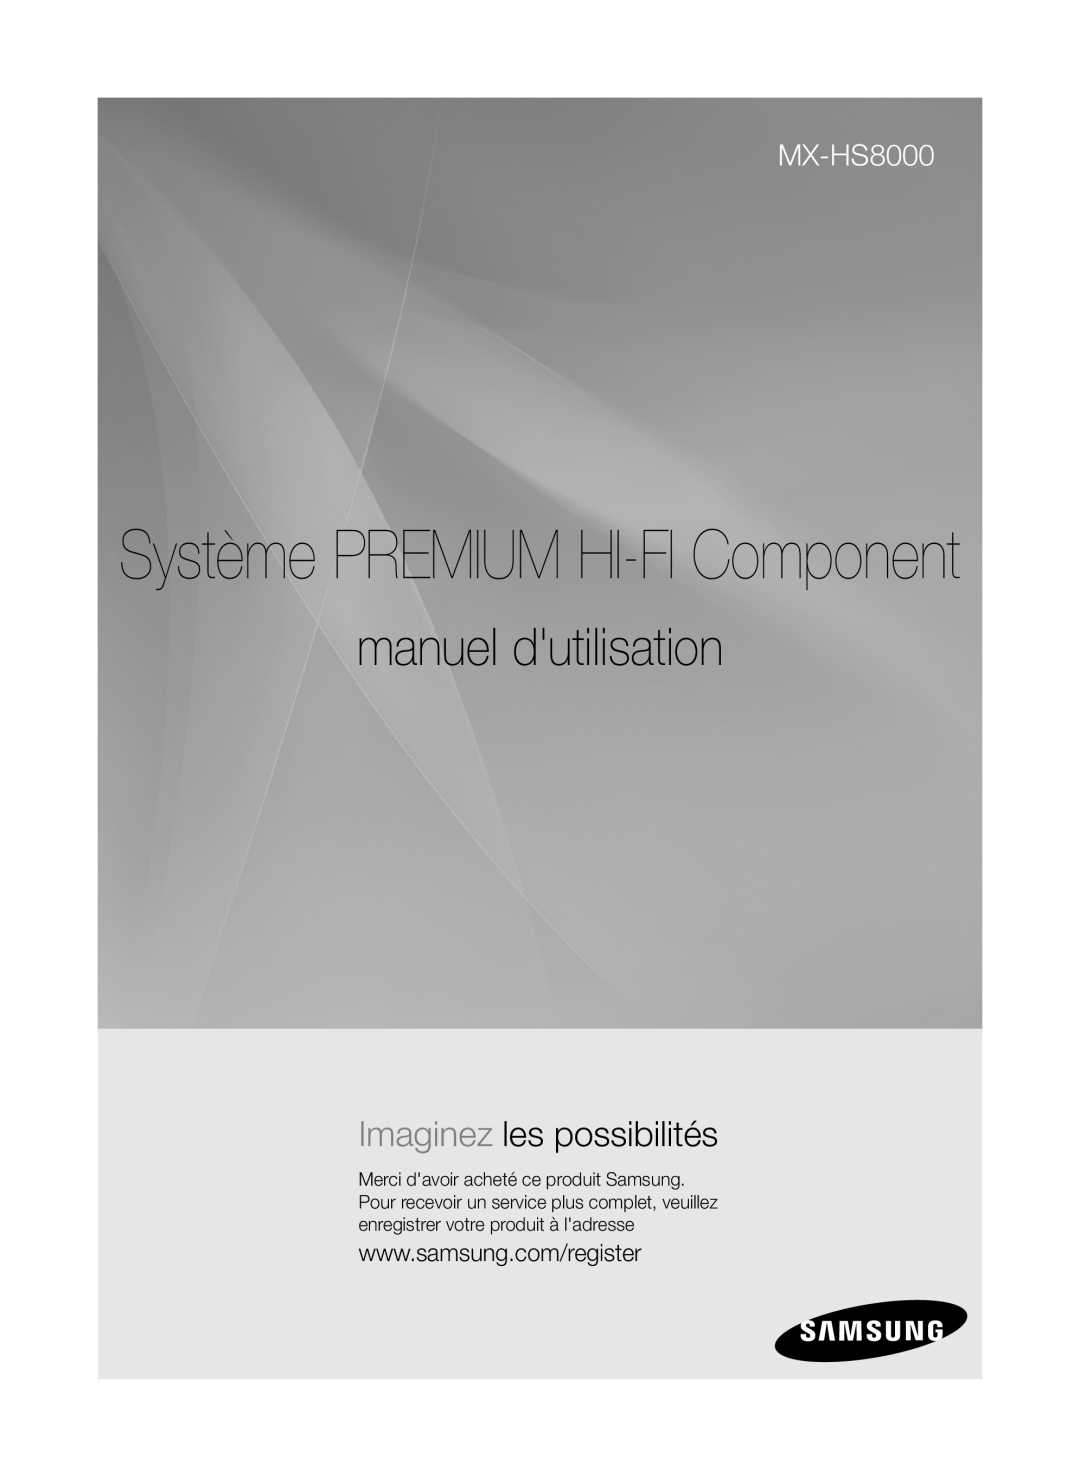 Samsung MX-HS8000/ZF, MX-HS8000/EN manual Système PREMIUM HI-FI Component manuel dutilisation, Imaginez les possibilités 